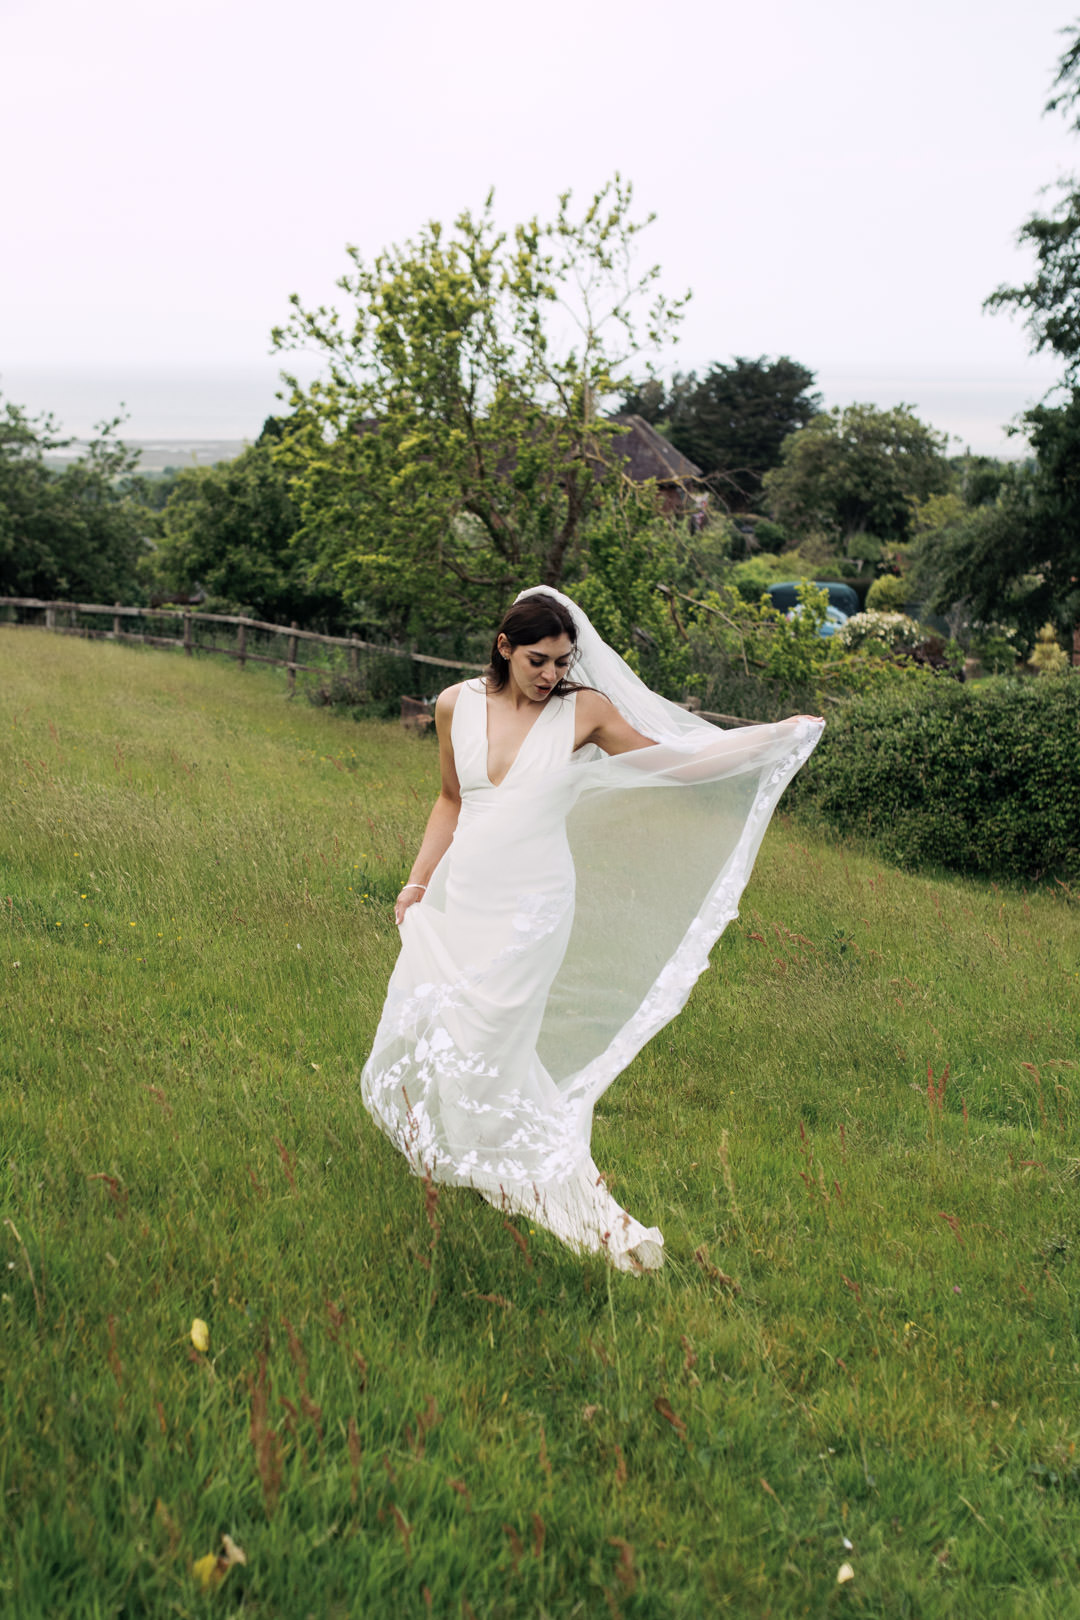 bride waring white dress in meadow field